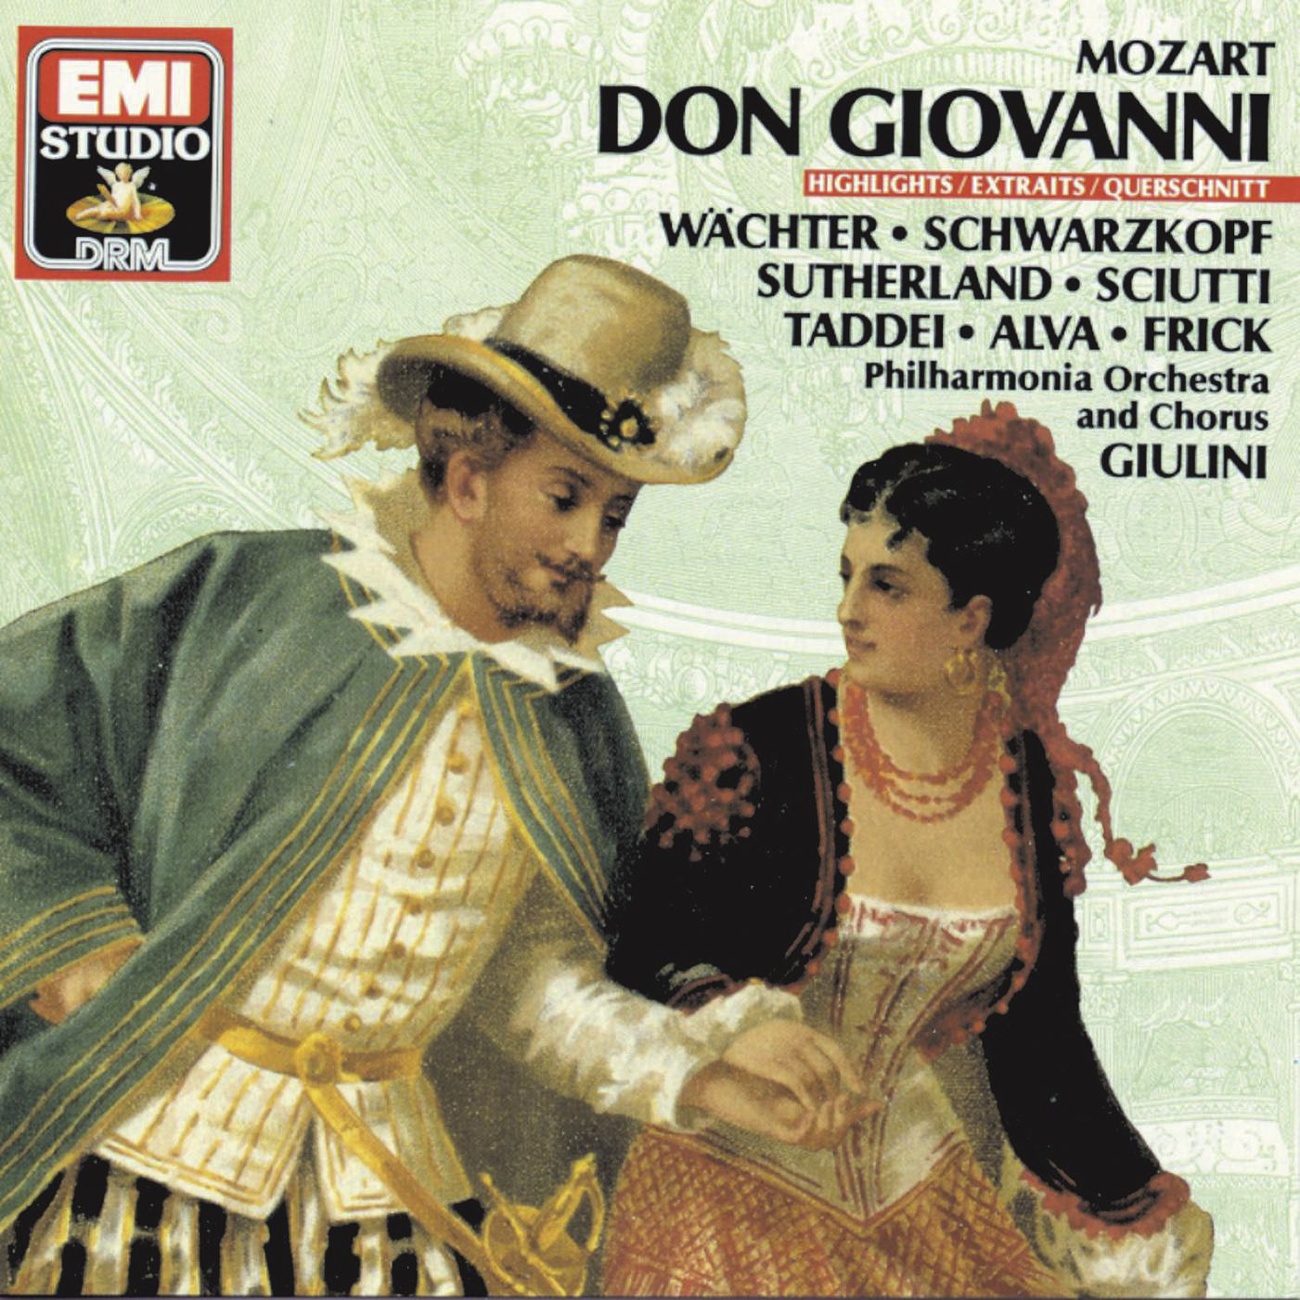 Don Giovanni (1987 Digital Remaster), Act 1: Madamina il catalogoe questo (Leporello)